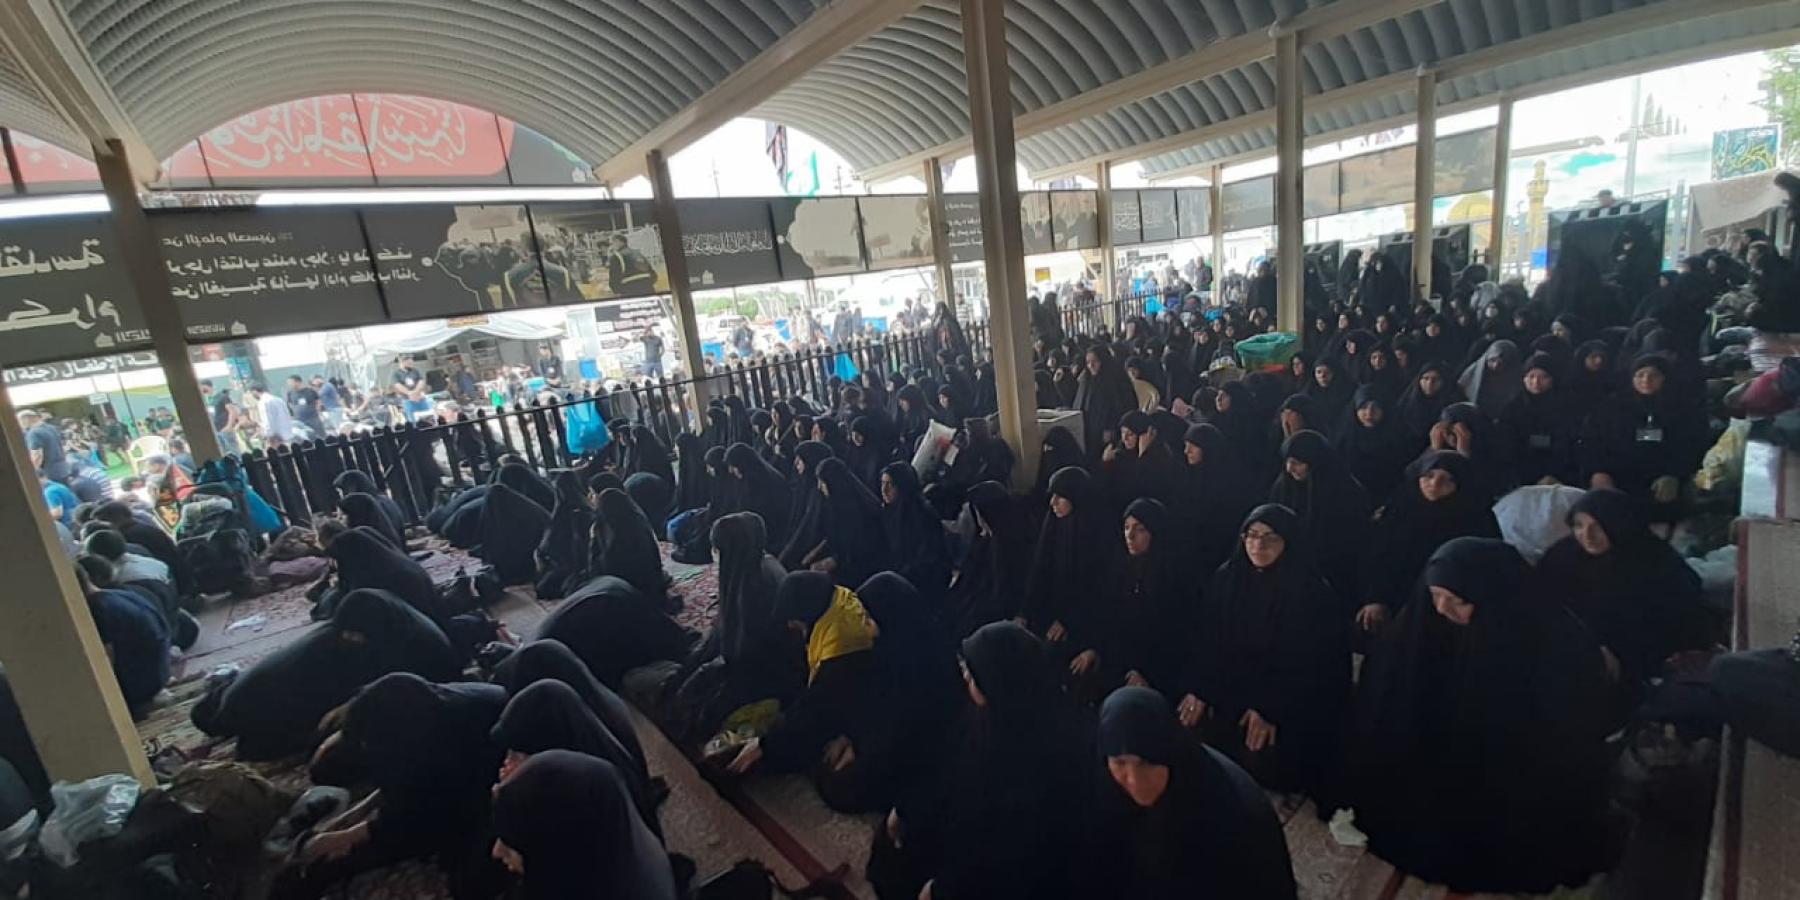 شعبة التعليم الديني النسوي تستنفر جهودها لتنفيذ خطتها التوجيهية لزائرات اربعينية الإمام الحسين (ع)